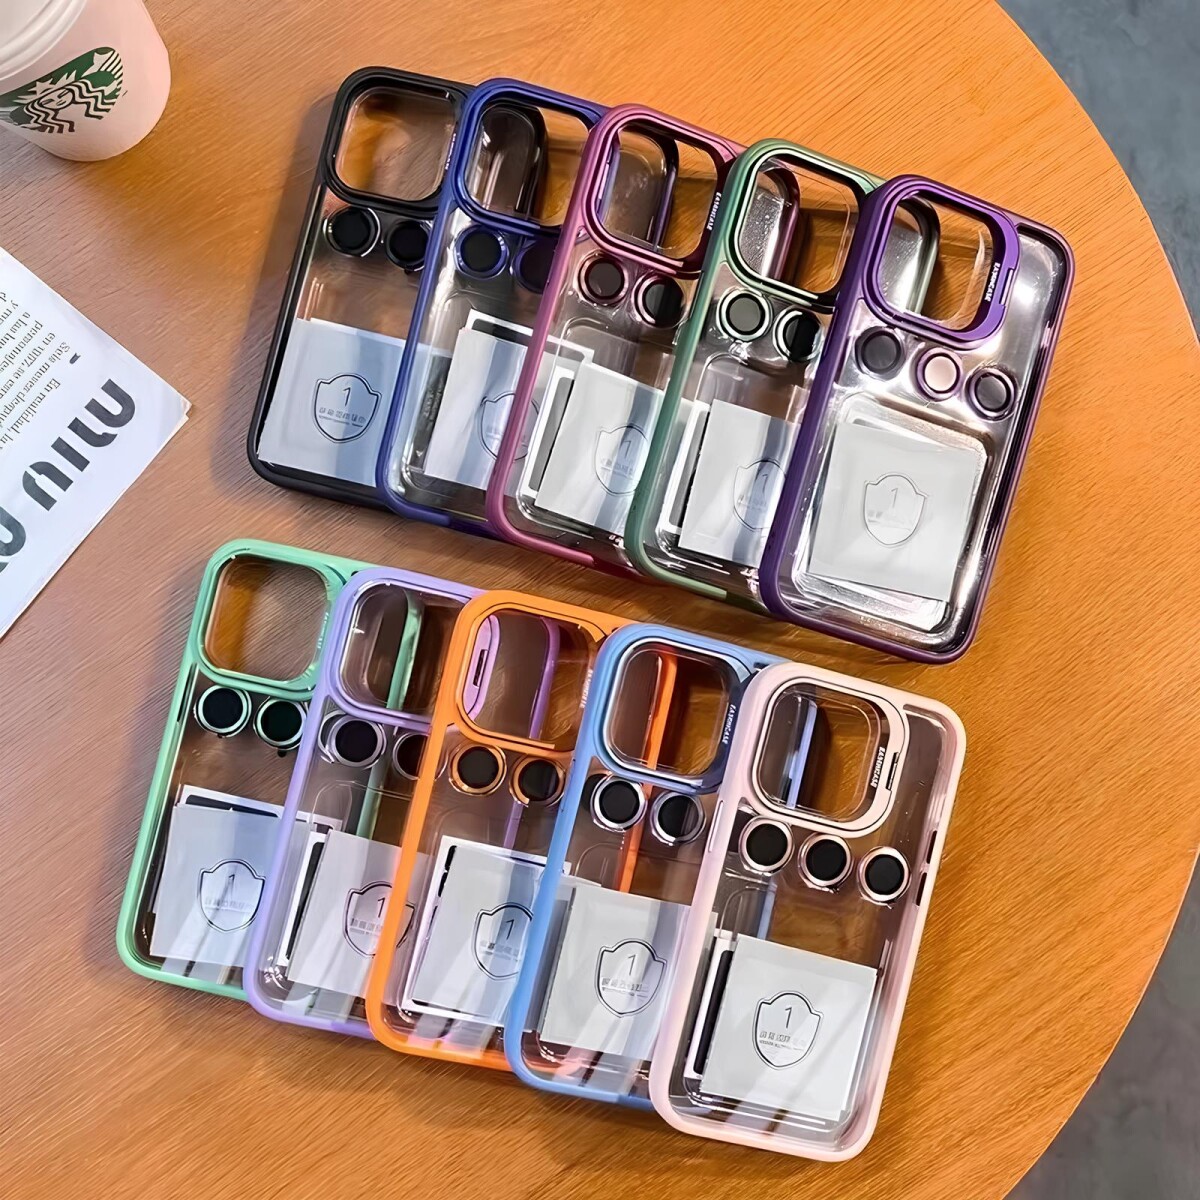 Case Transparente con Borde de Color y Protector de Lente Iphone 11 Celeste